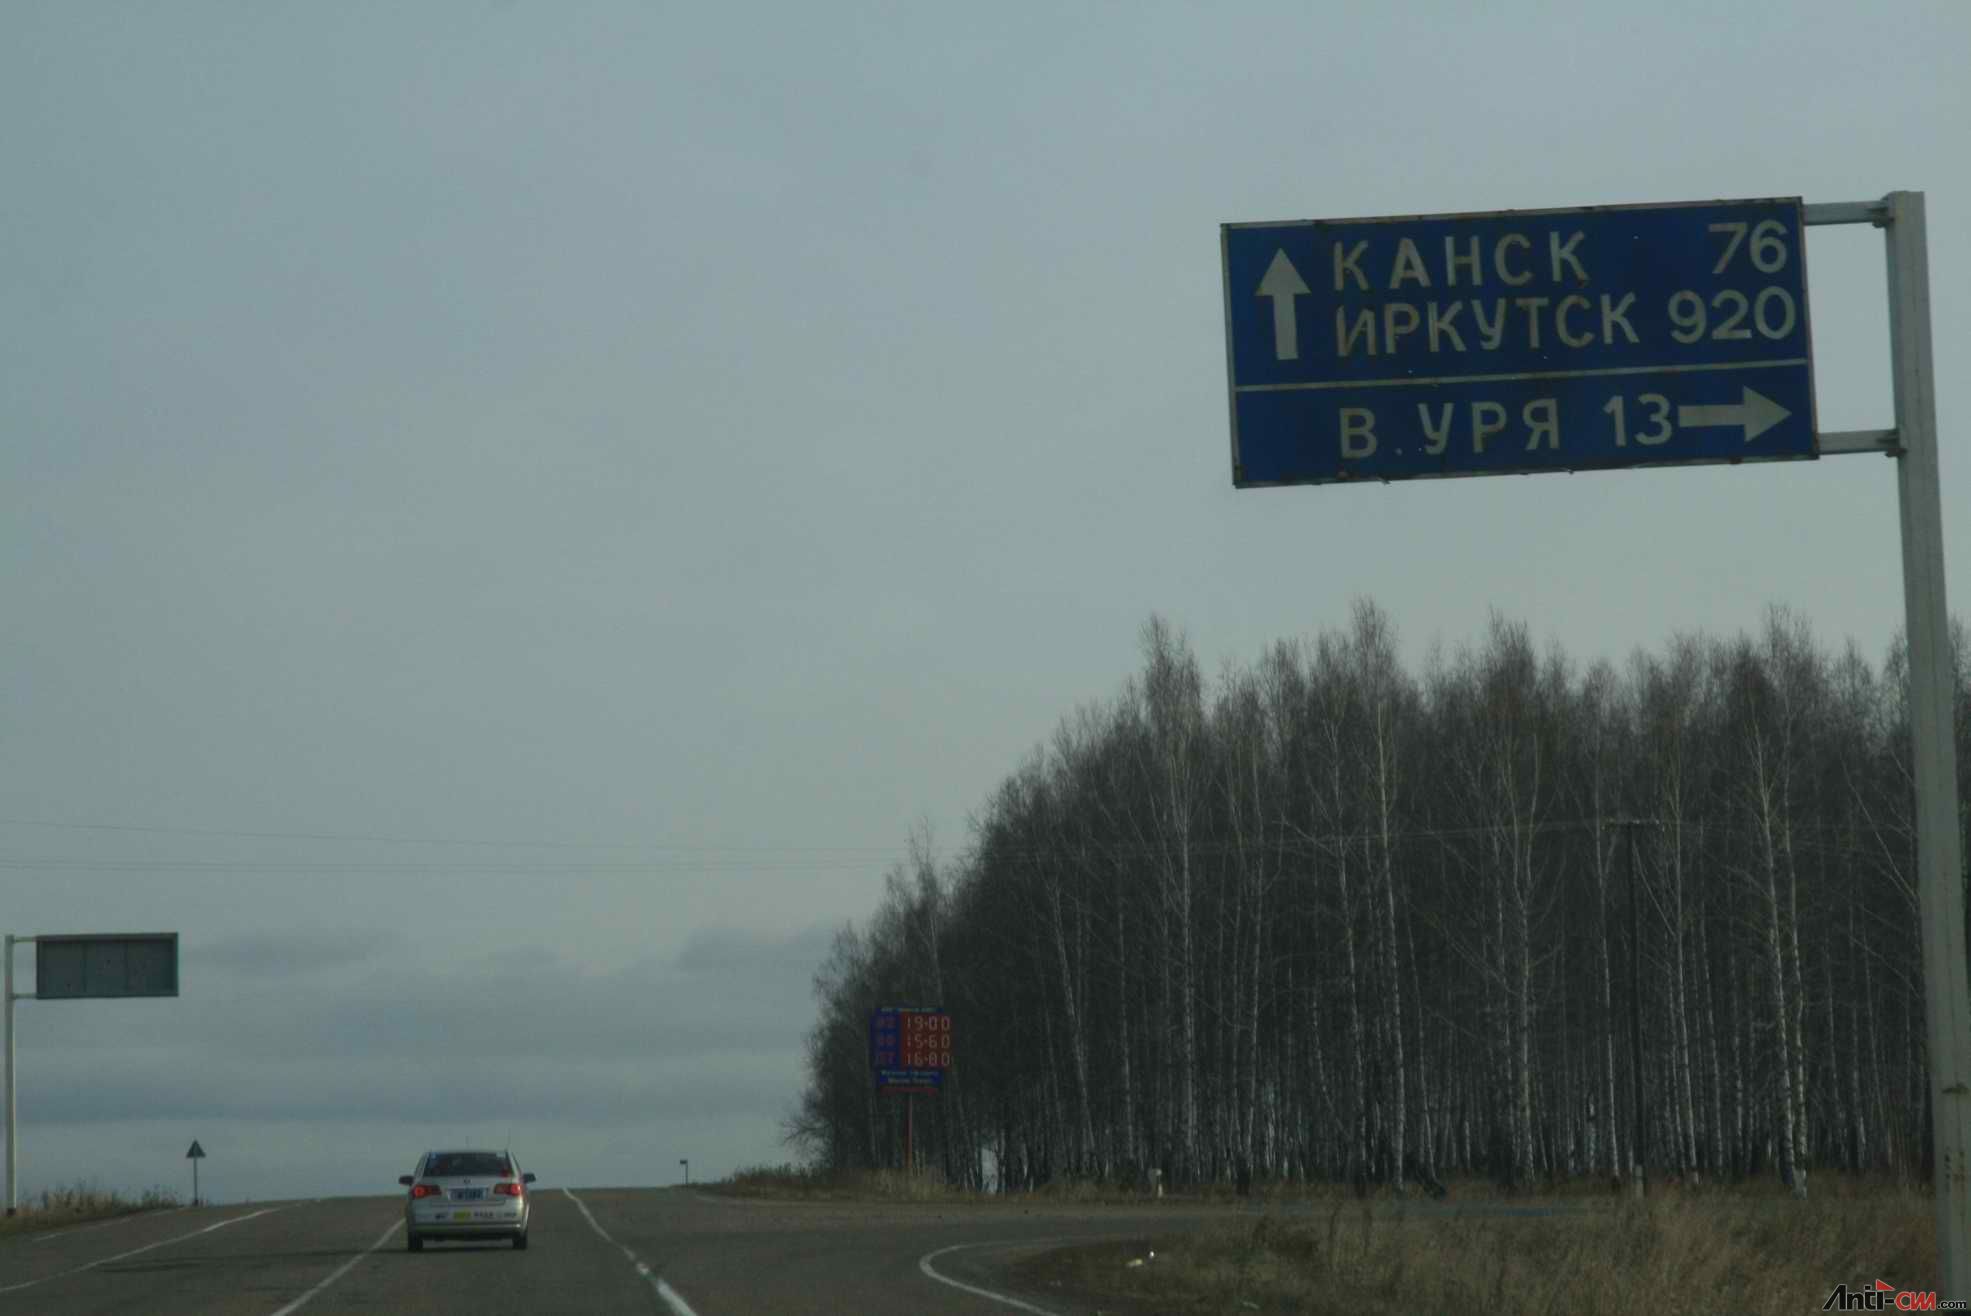 西伯利亚之路.jpg